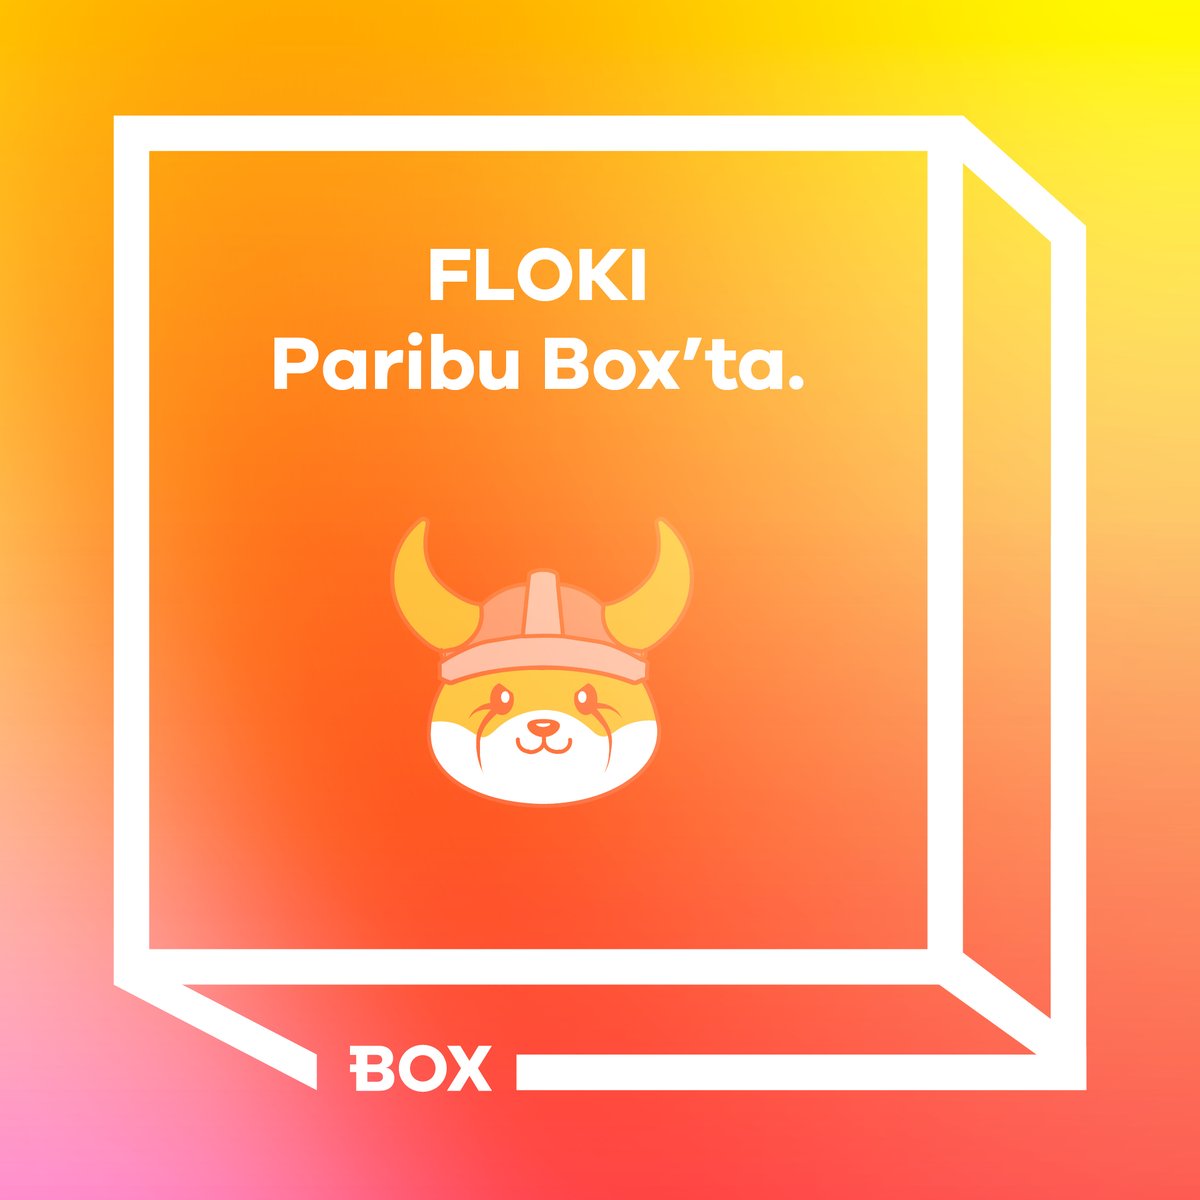 Paribu Box'ta Floki Inu (FLOKI) yatırma işlemleri başladı. Bugün 16.00 itibarıyla alış satış işlemlerinizi gerçekleştirebilirsiniz. Paribu Box hakkında detaylı bilgi için 🔽 paribu.com/blog/haberler/…